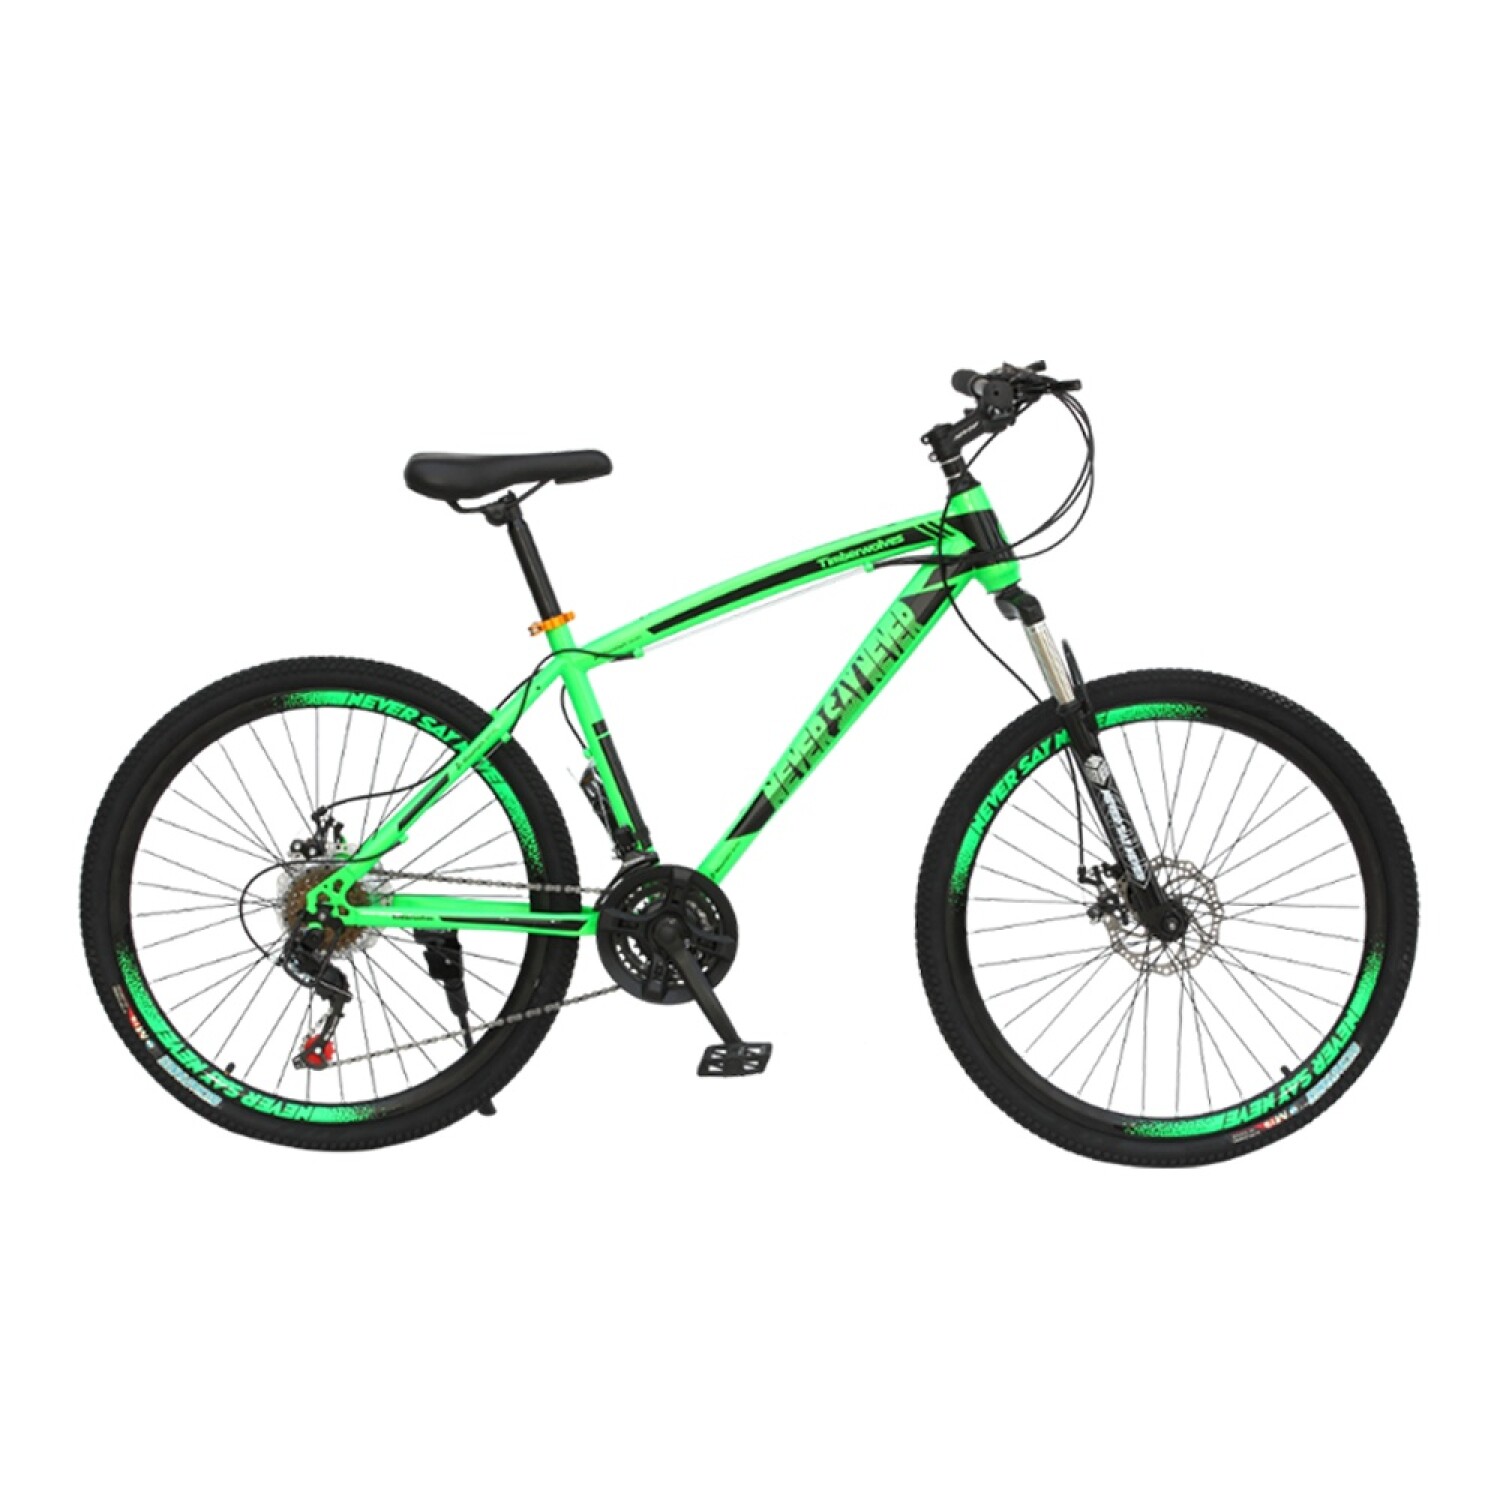 Bicicleta de Montaña Rodado 29 con 21 Cambios para Hombre - Verde